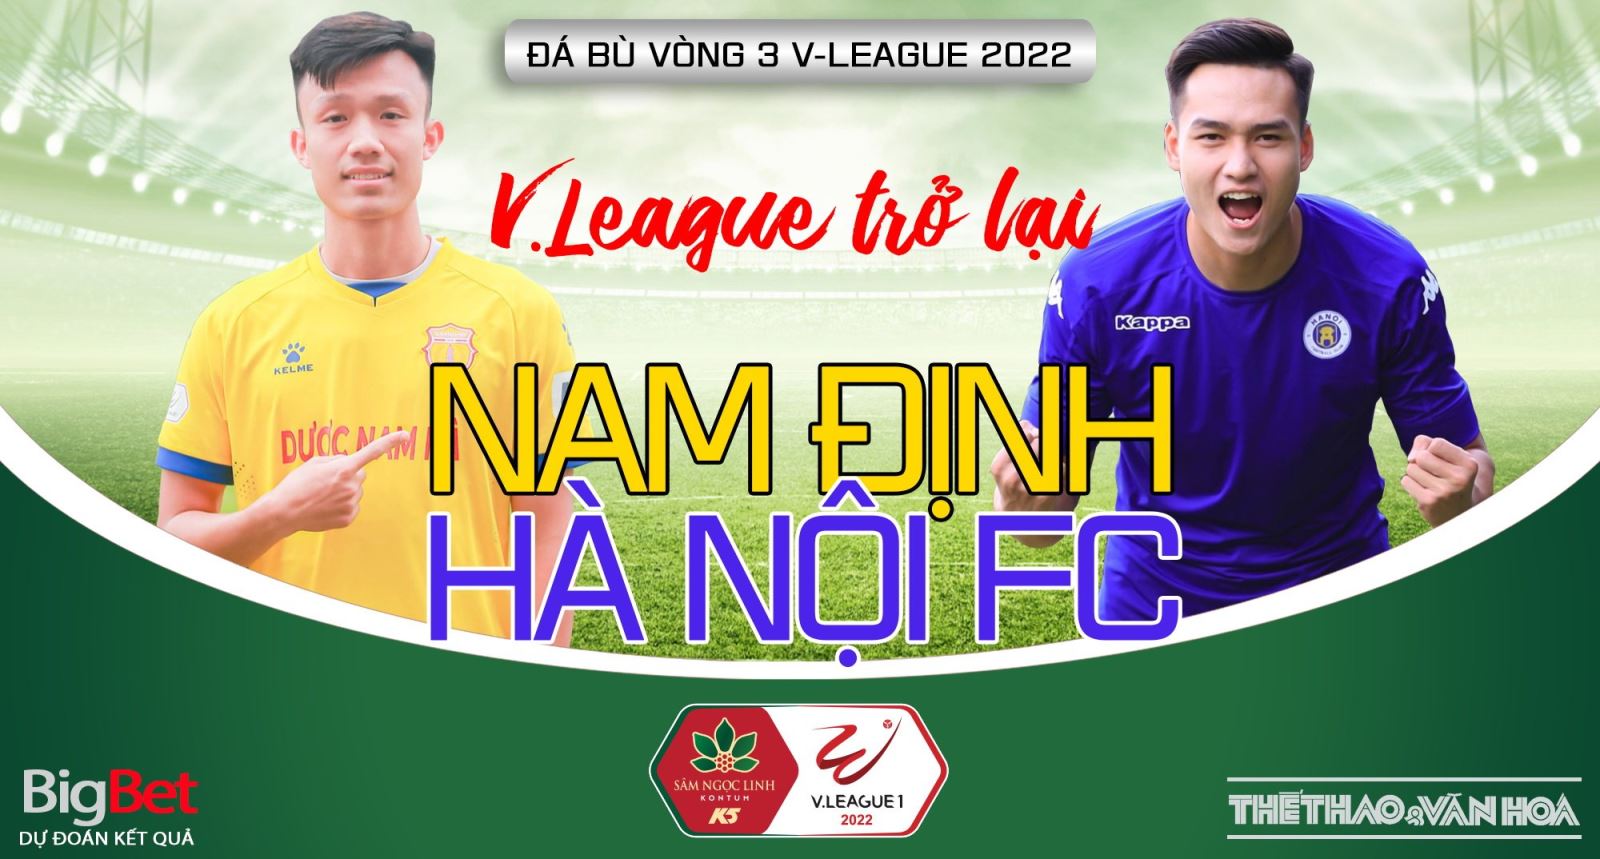 Soi kèo nhà cái Nam Định vs Hà Nội FC. Nhận định, dự đoán bóng đá V-League 2022 (18h00, 26/6)_62b7cece65d70.jpeg